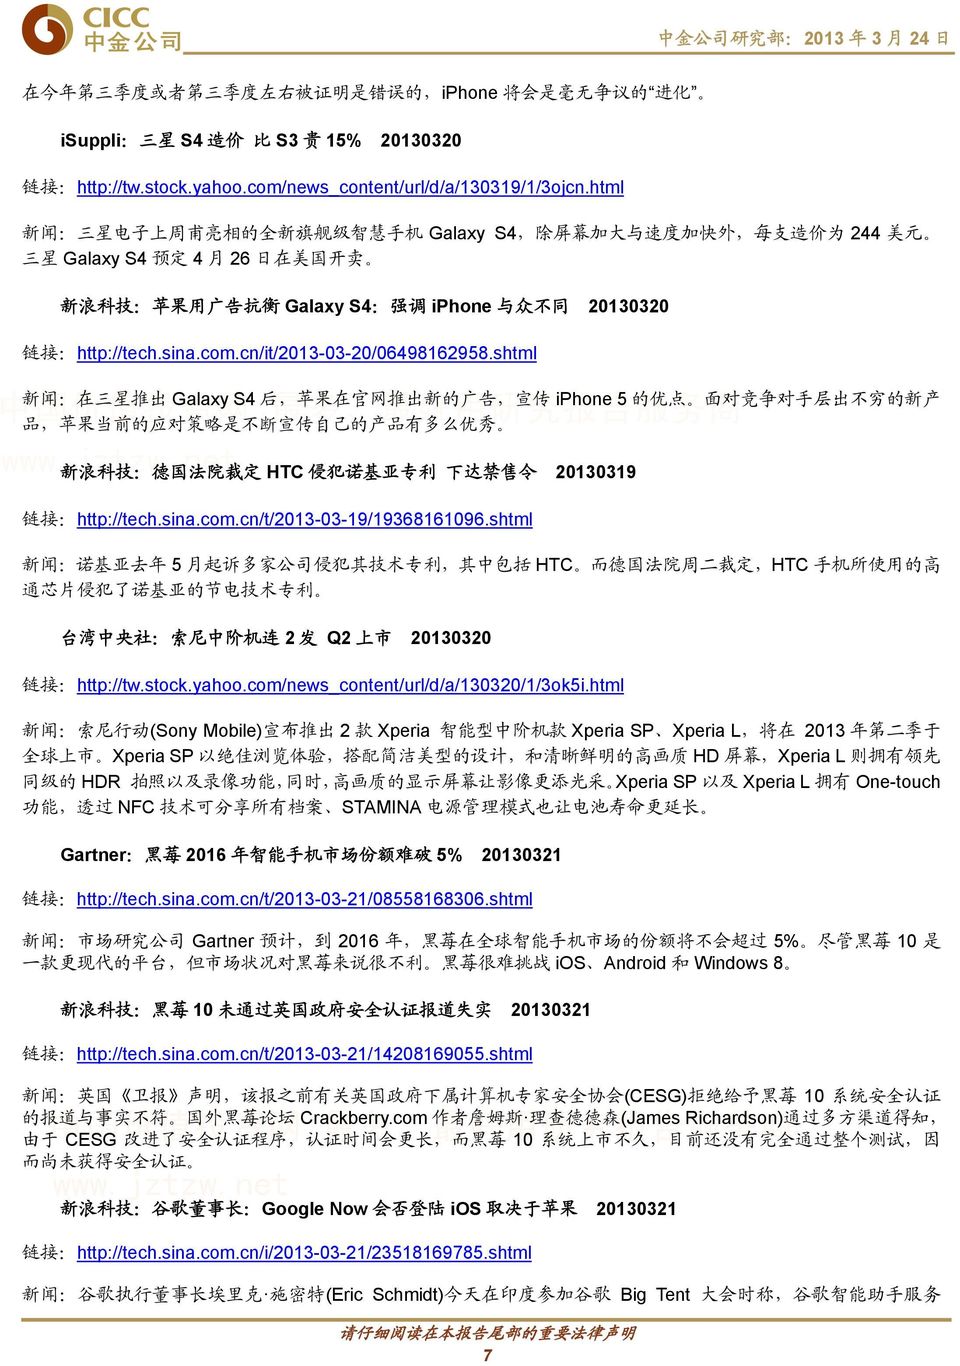 20130320 链 接 :http://tech.sina.com.cn/it/2013-03-20/06498162958.